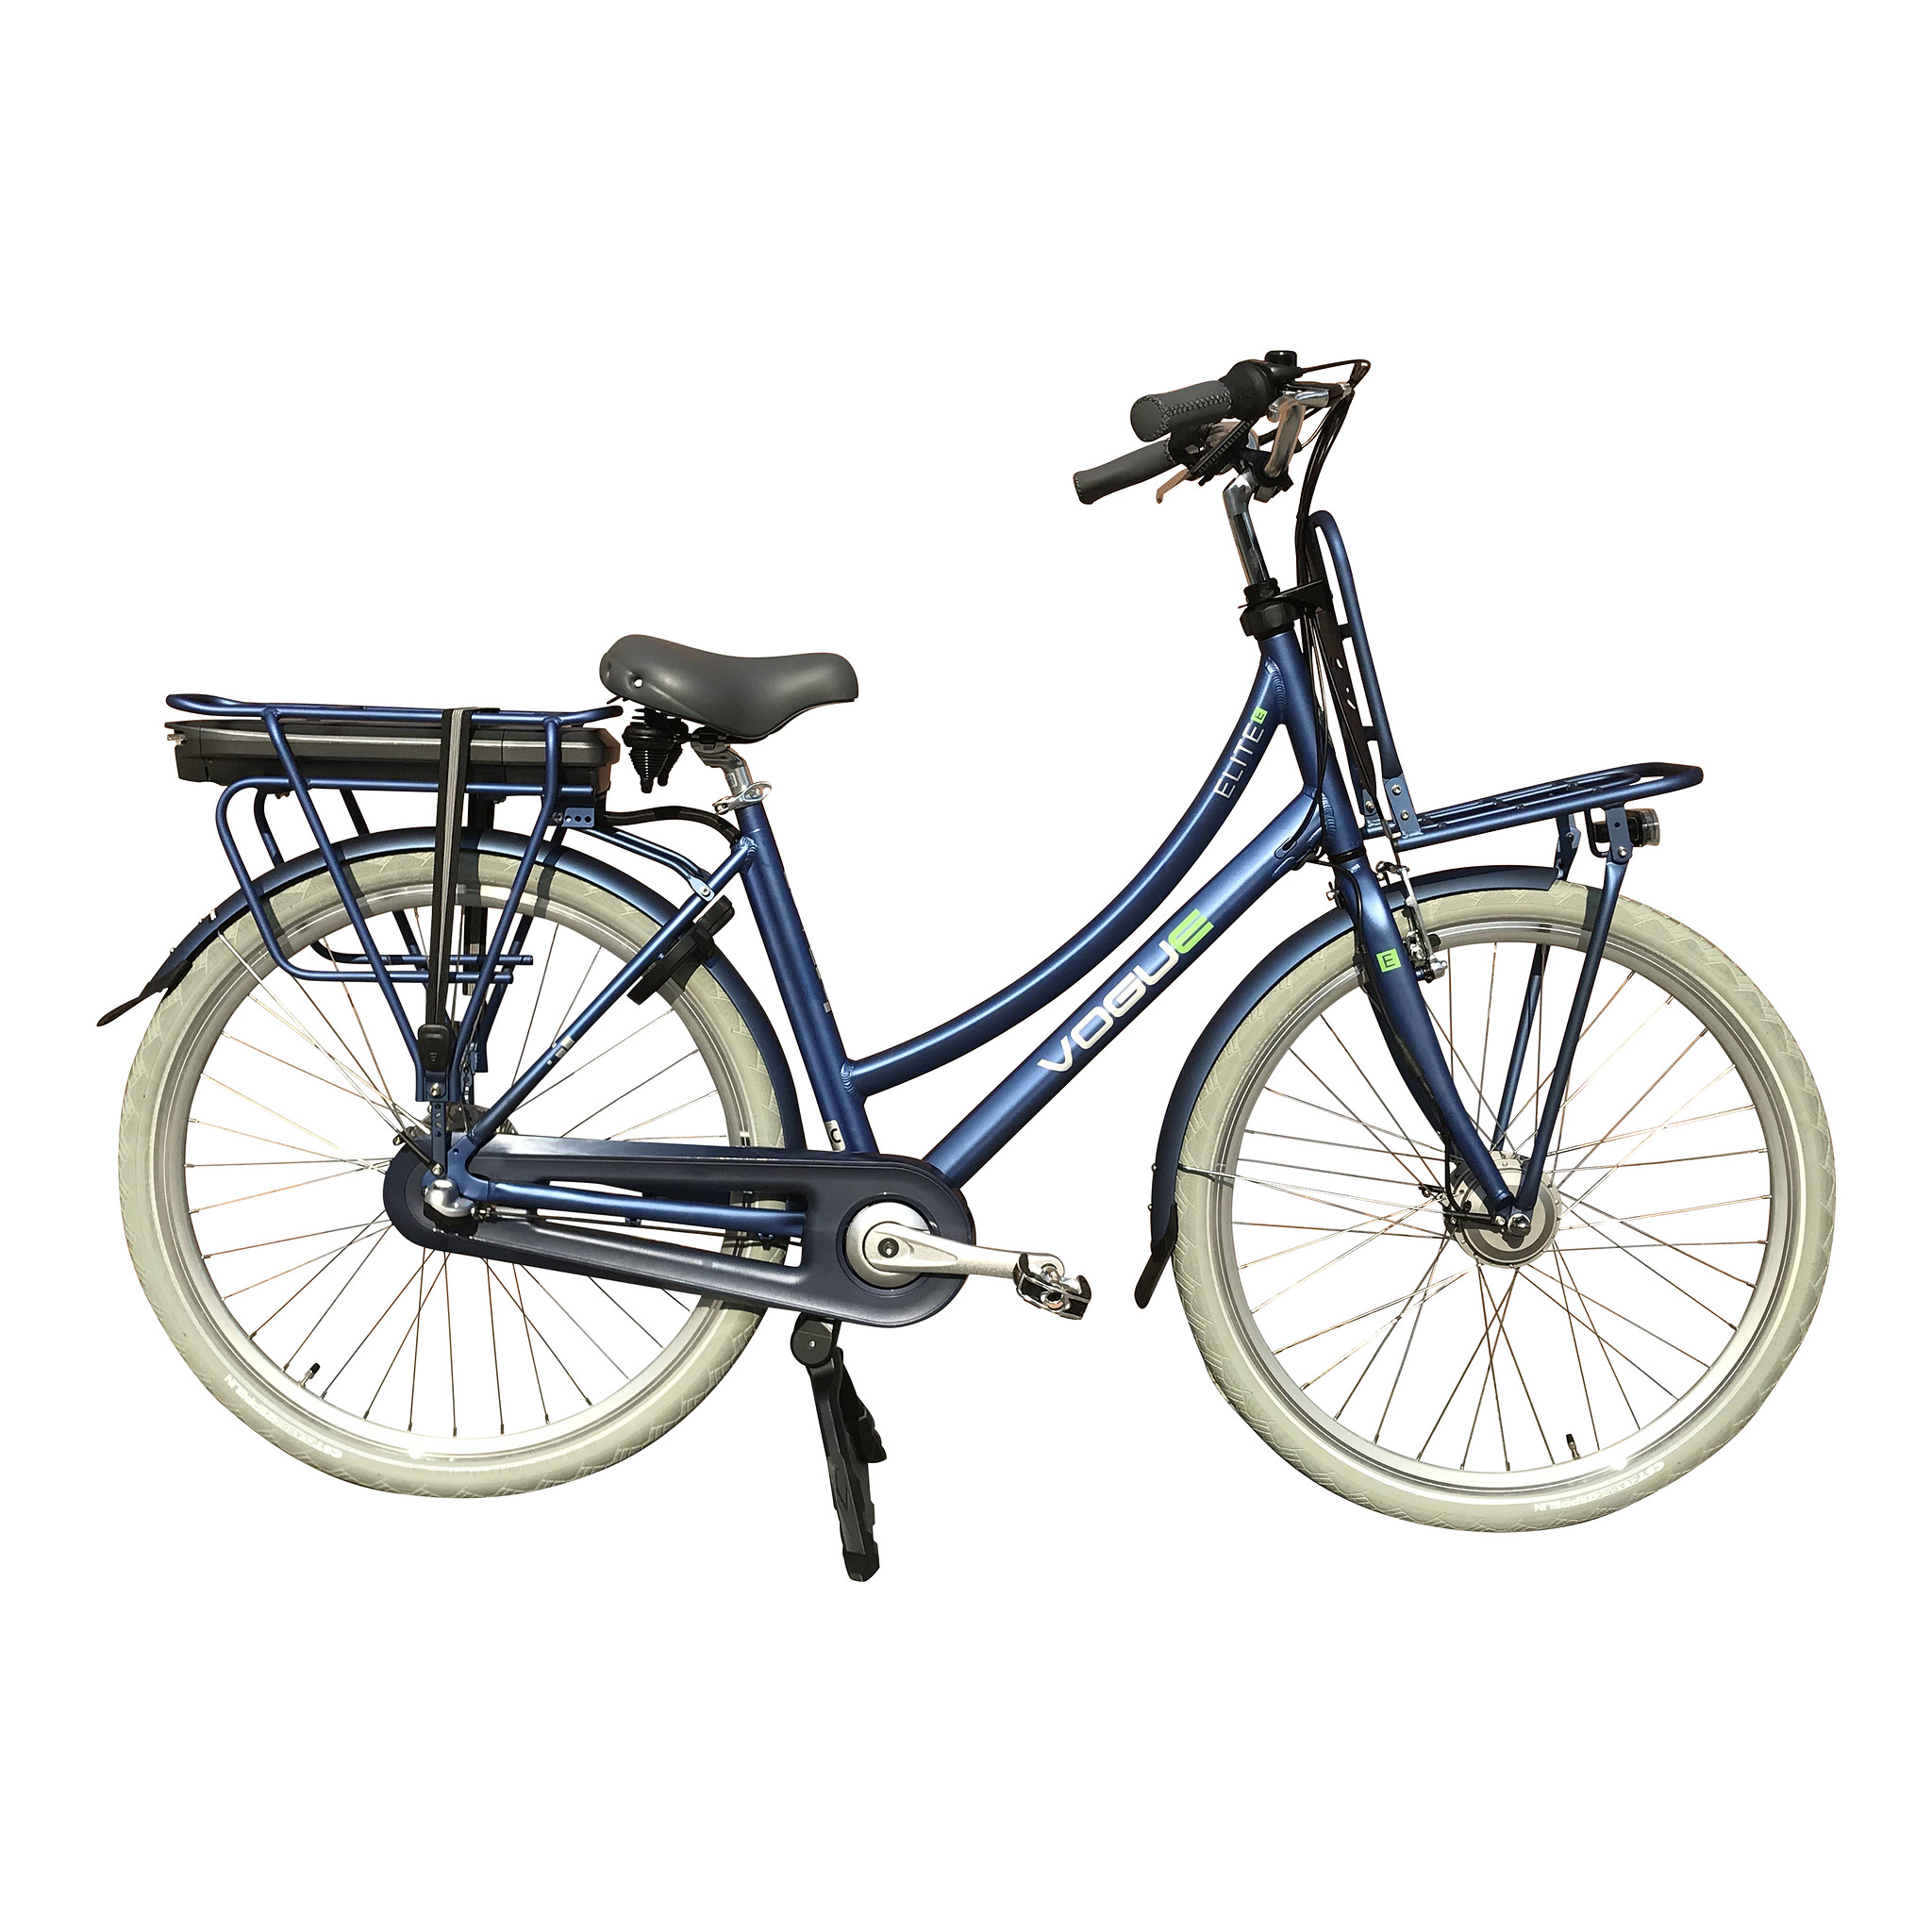 Vogue Elektrische fiets e-Elite dames 50cm 468 Watt - Blauw